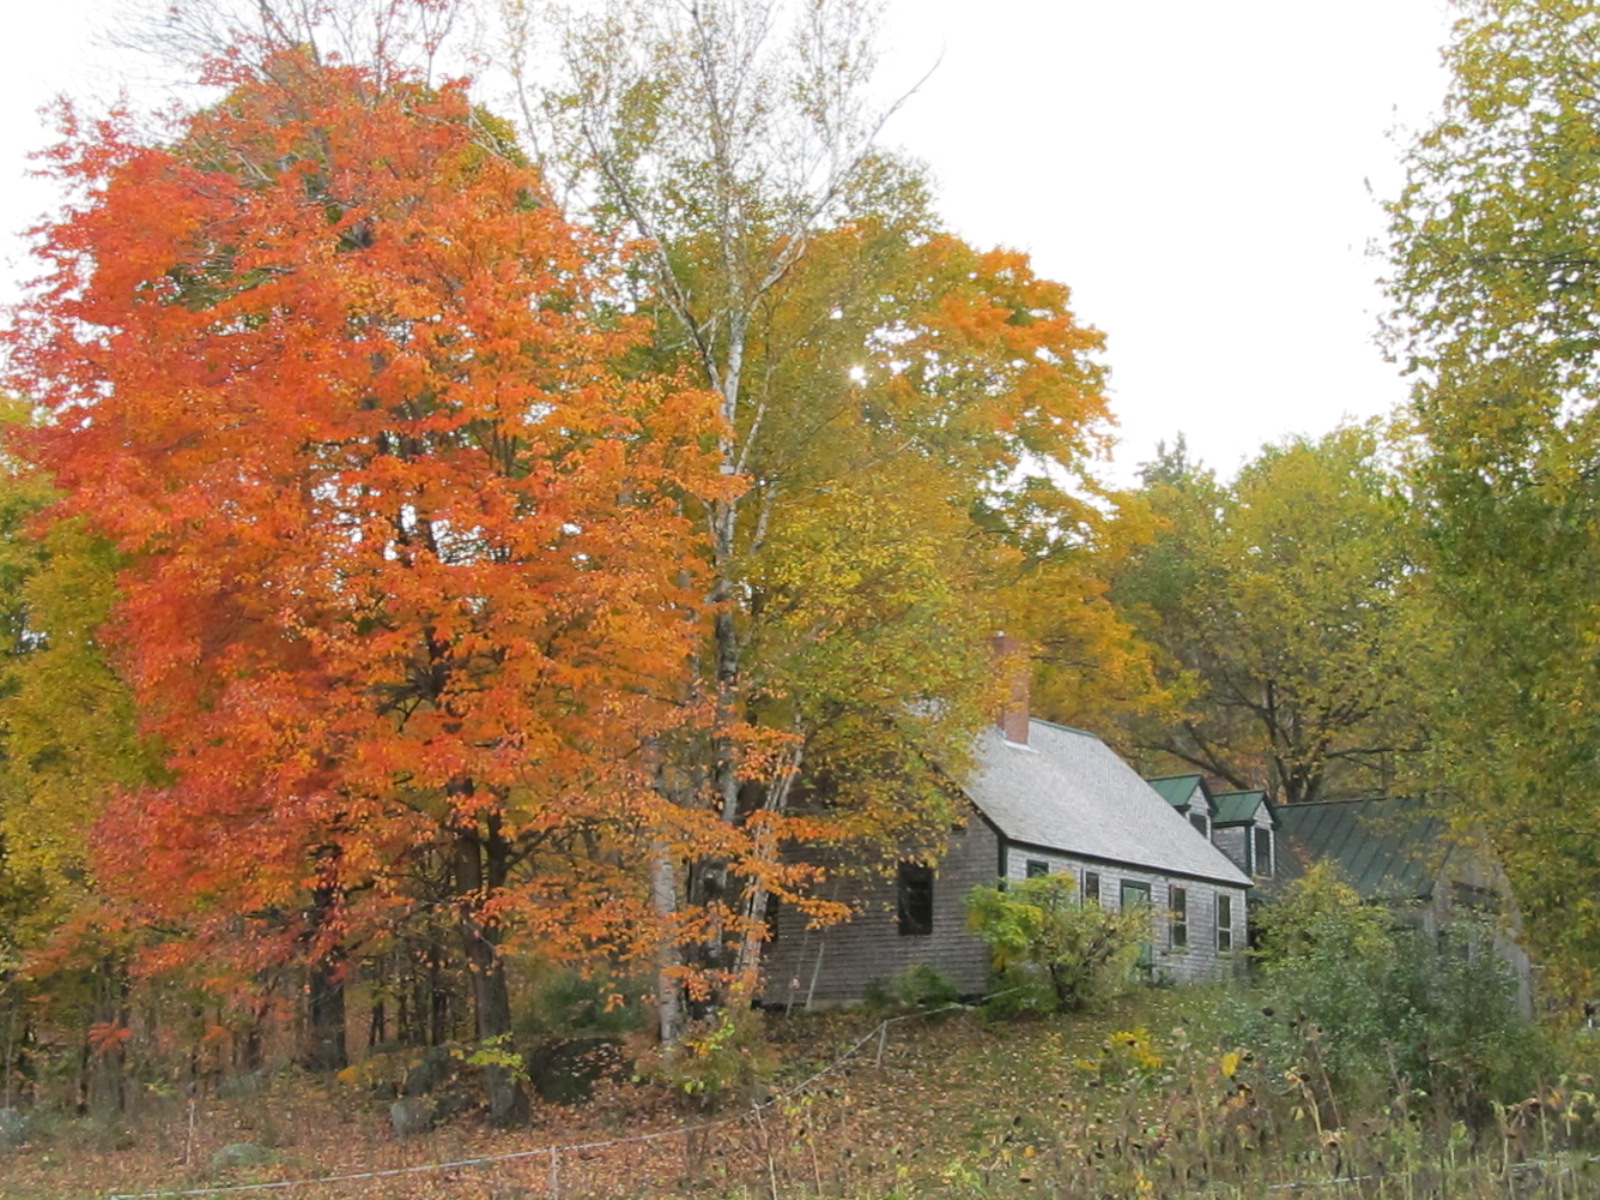 Fall-colored farm house